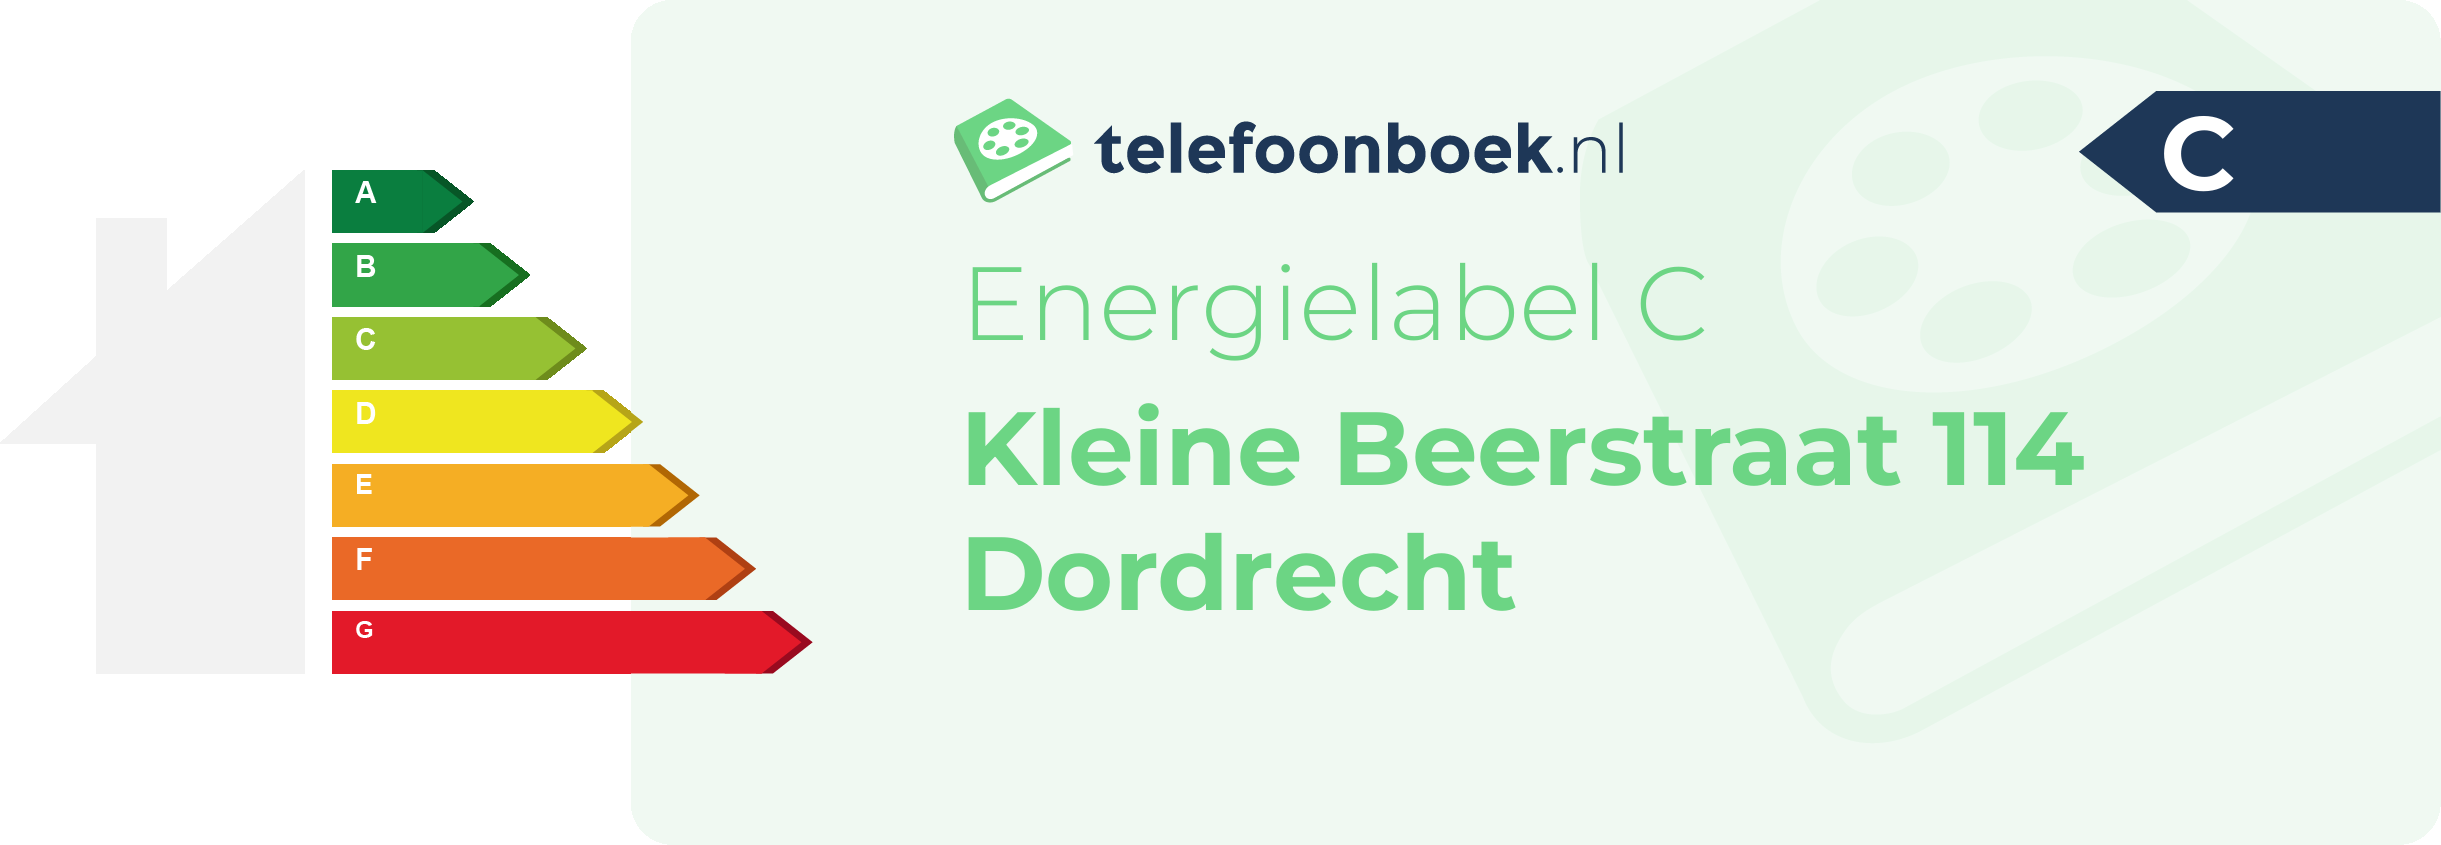 Energielabel Kleine Beerstraat 114 Dordrecht